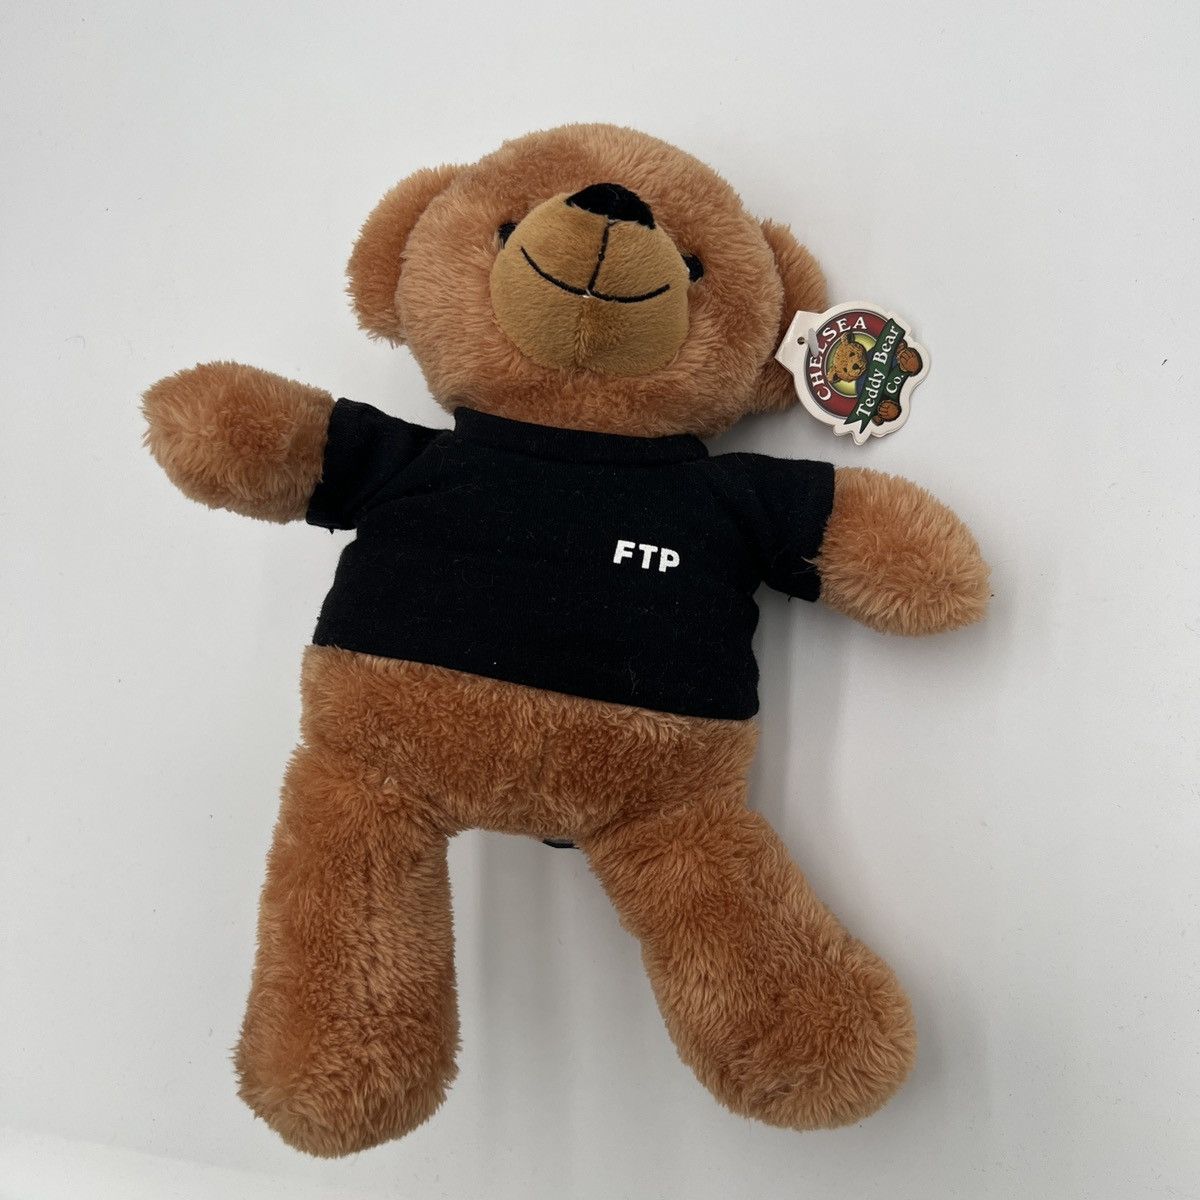 FTP Allover Print Teddy Bear Black